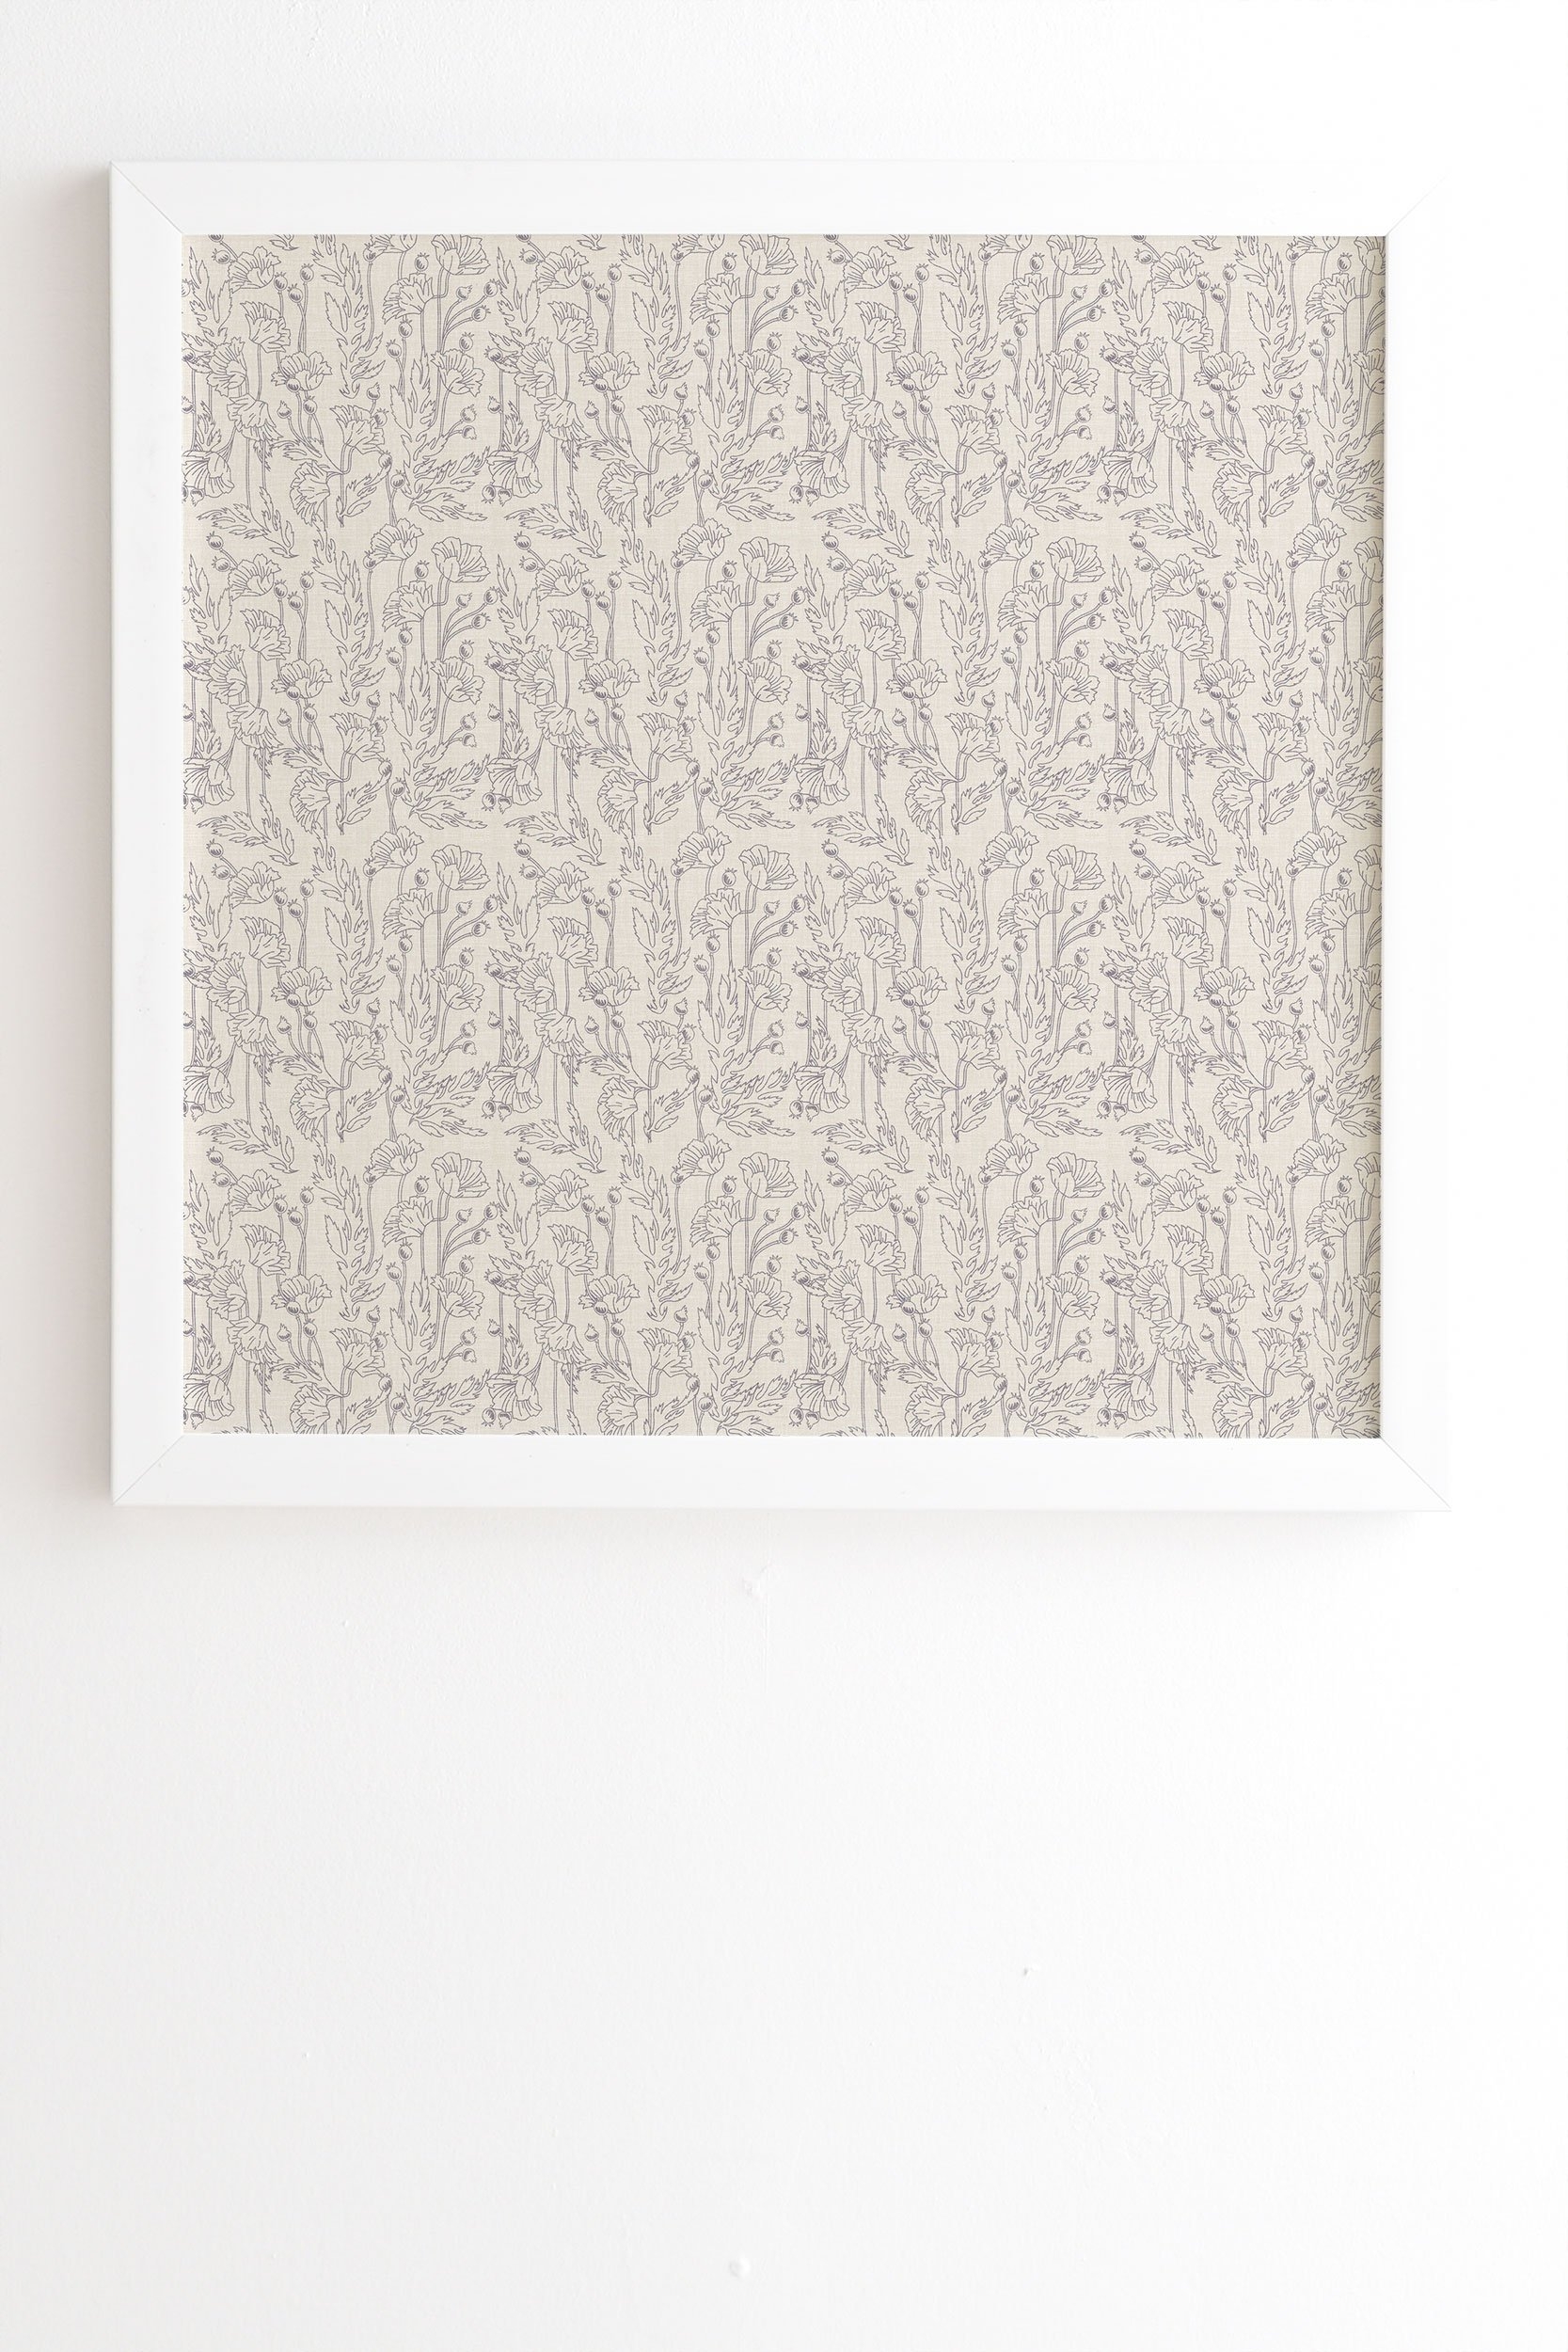 Holli Zollinger POPPY GREY White Framed Wall Art - 12" x 12" - Image 1